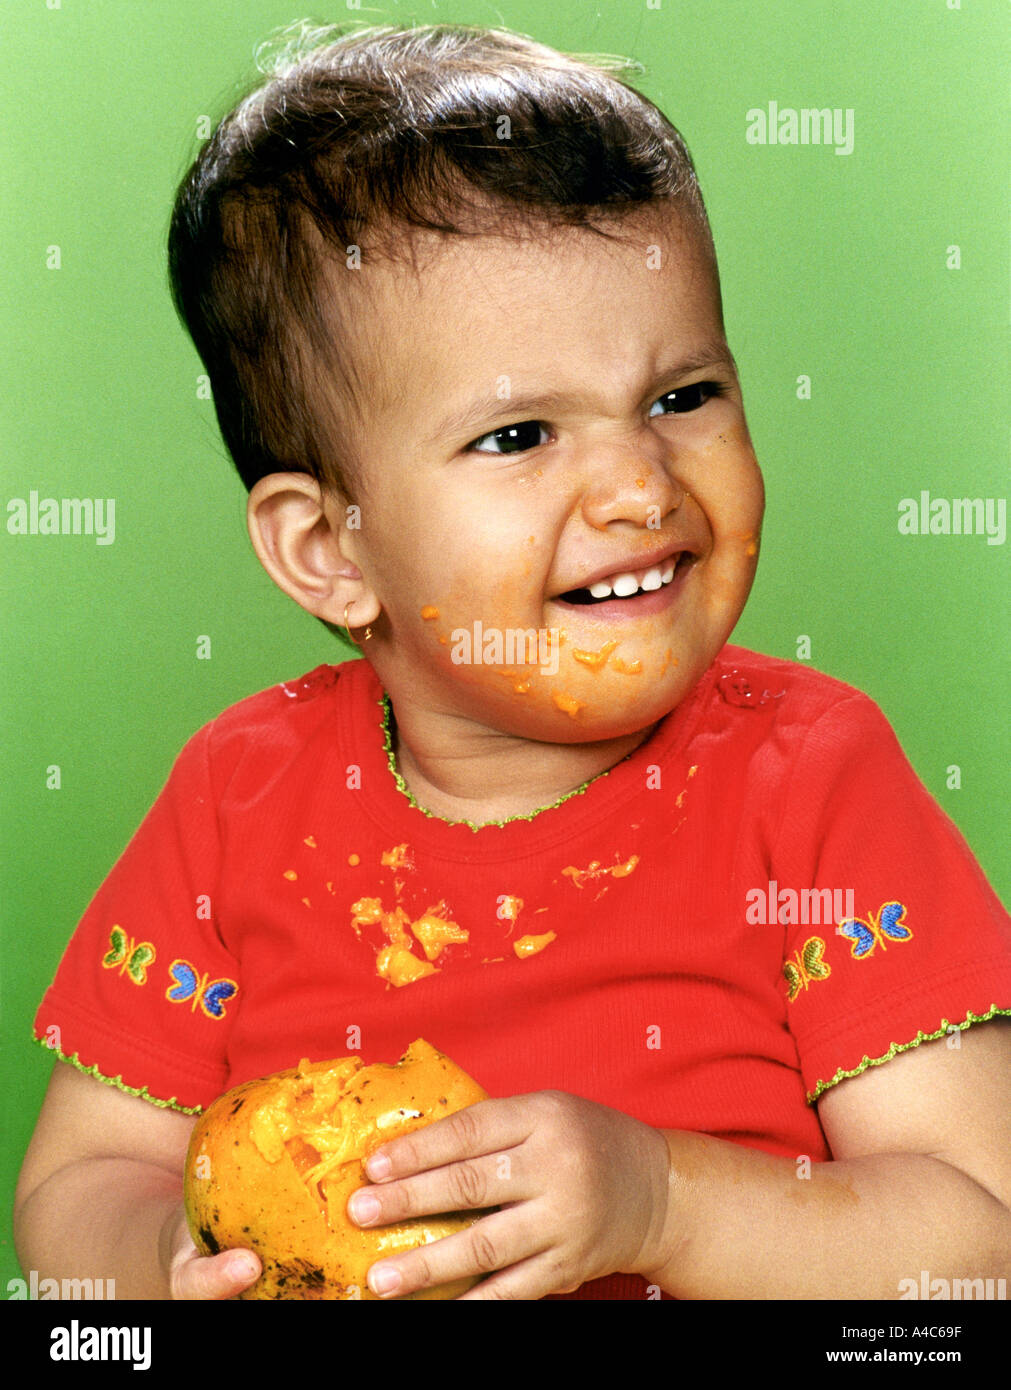 Child eating a mango Stock Photo - Alamy